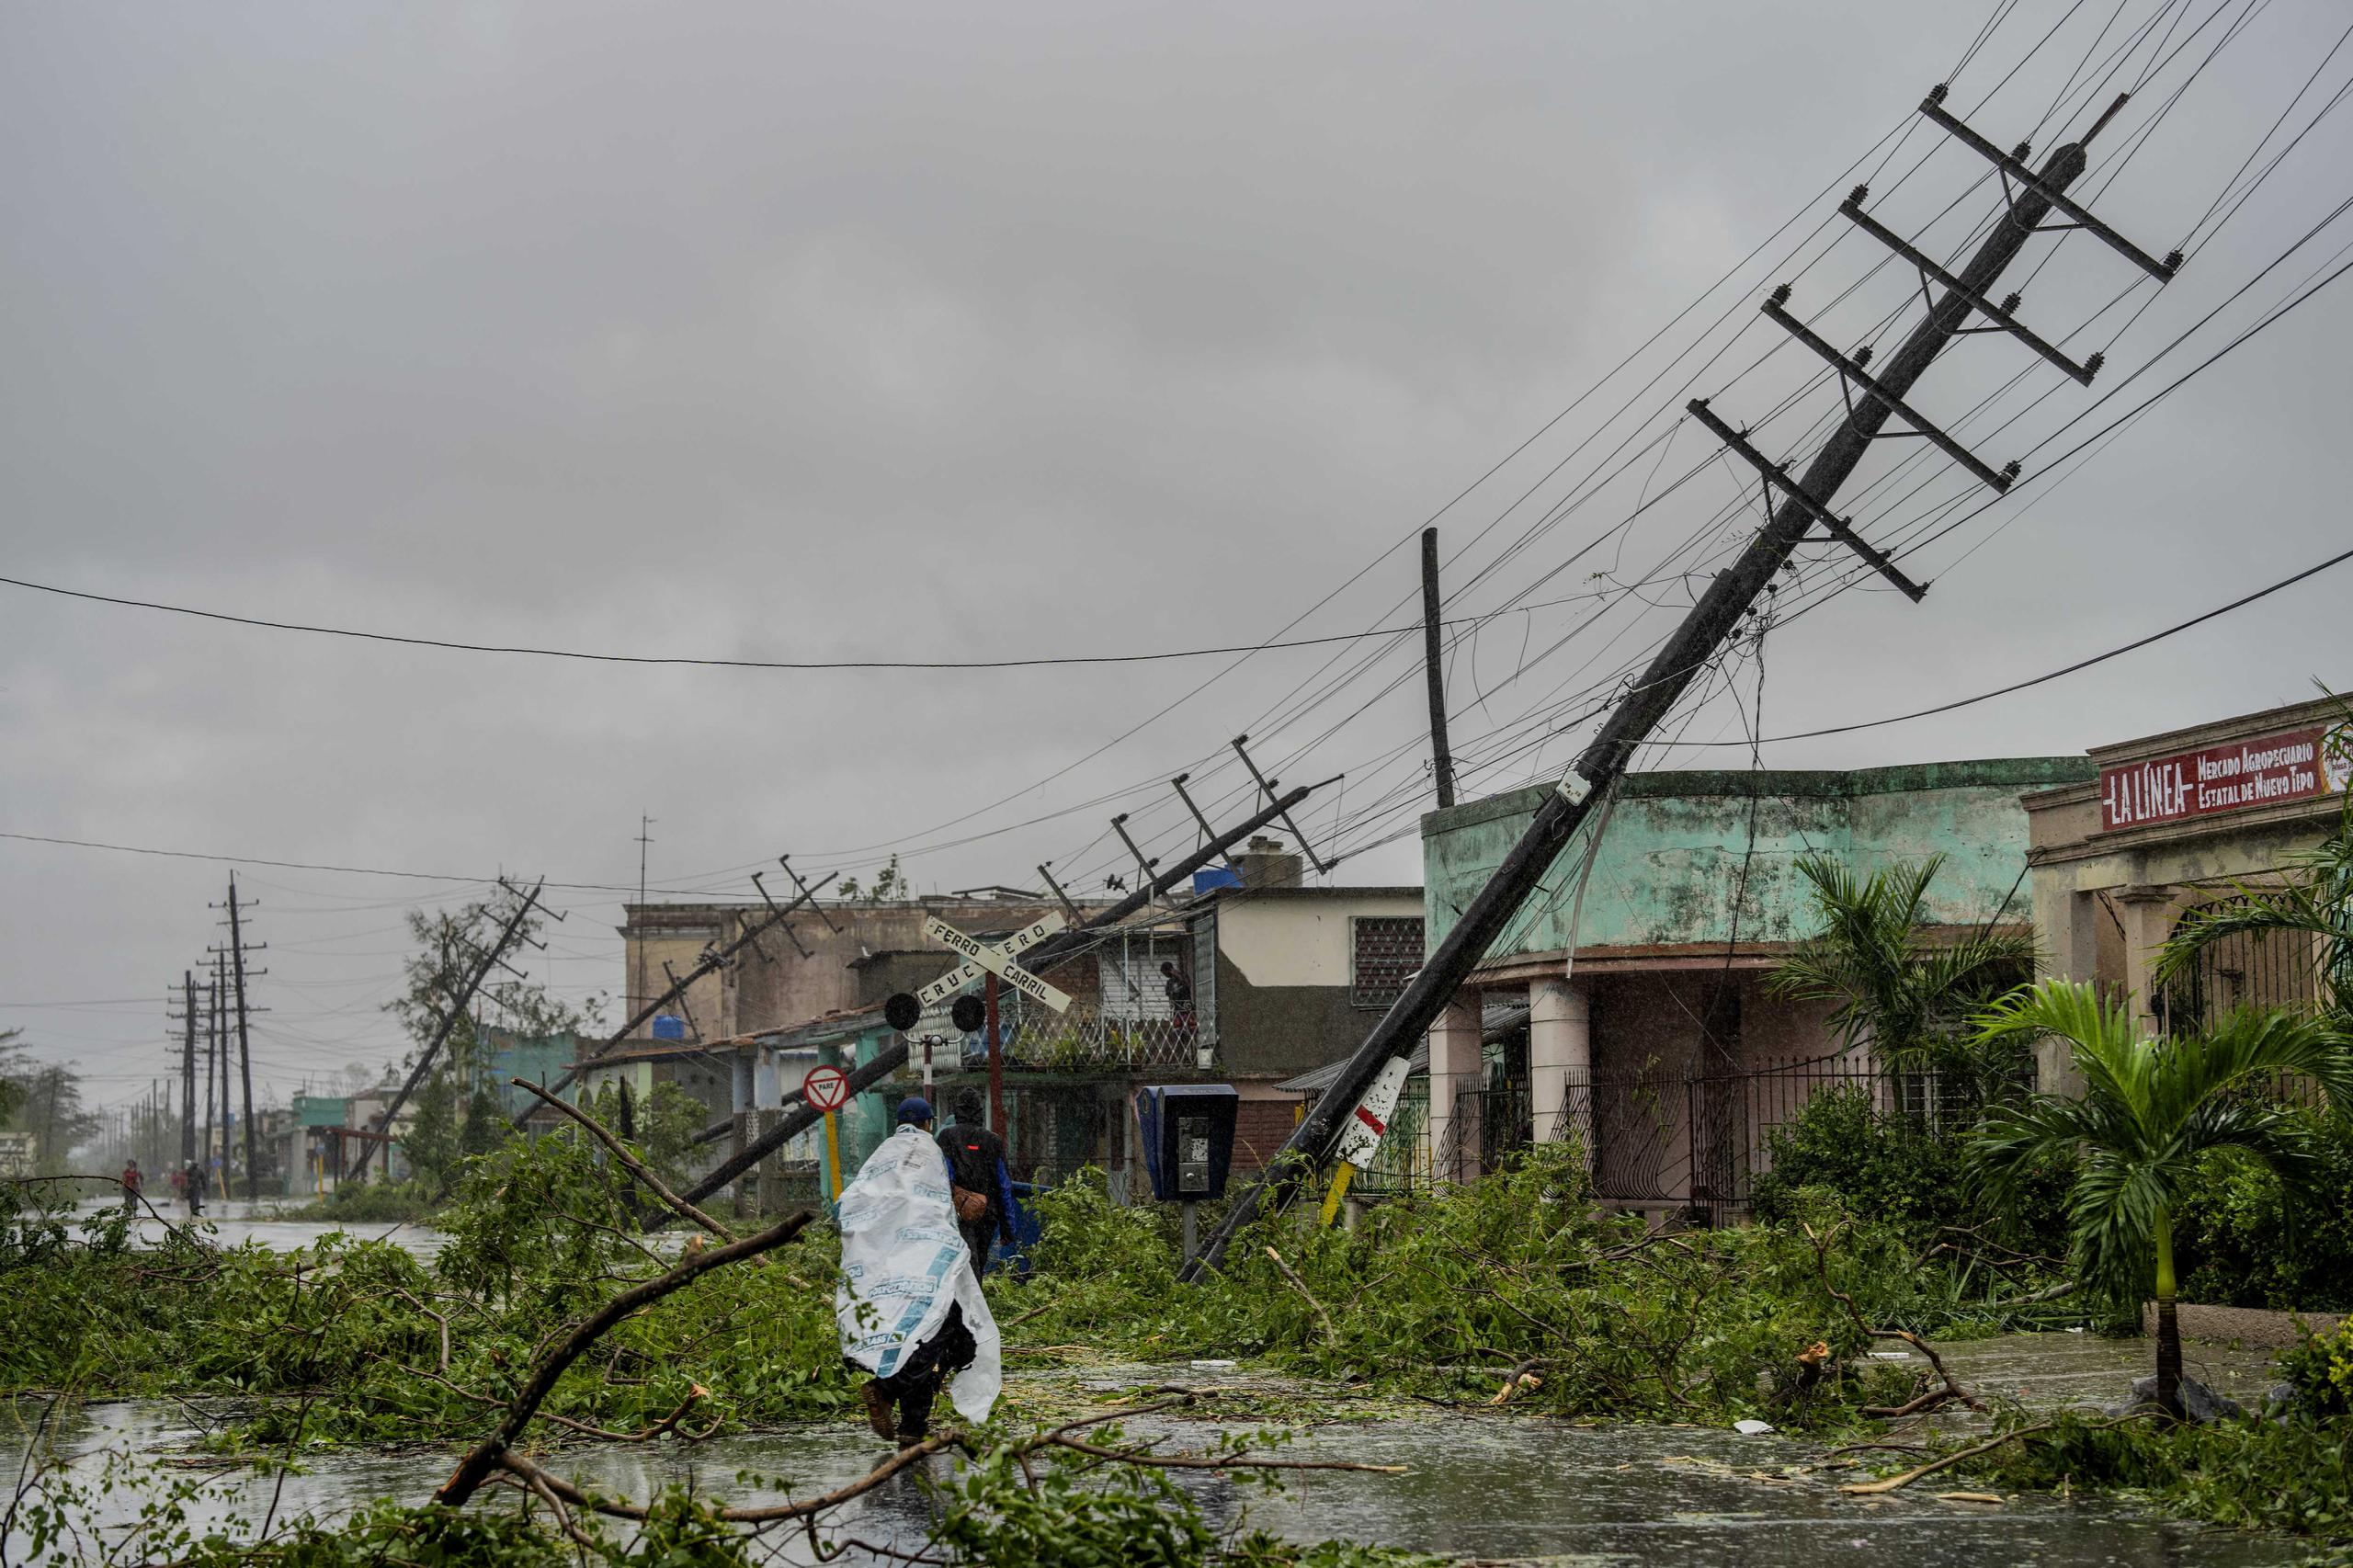 Postes de electricidad caídos y ramas caídas bordean una calle después de que el huracán Ian azotara Pinar del Río, Cuba, el martes 27 de septiembre de 2022. (AP Foto/Ramón Espinosa)